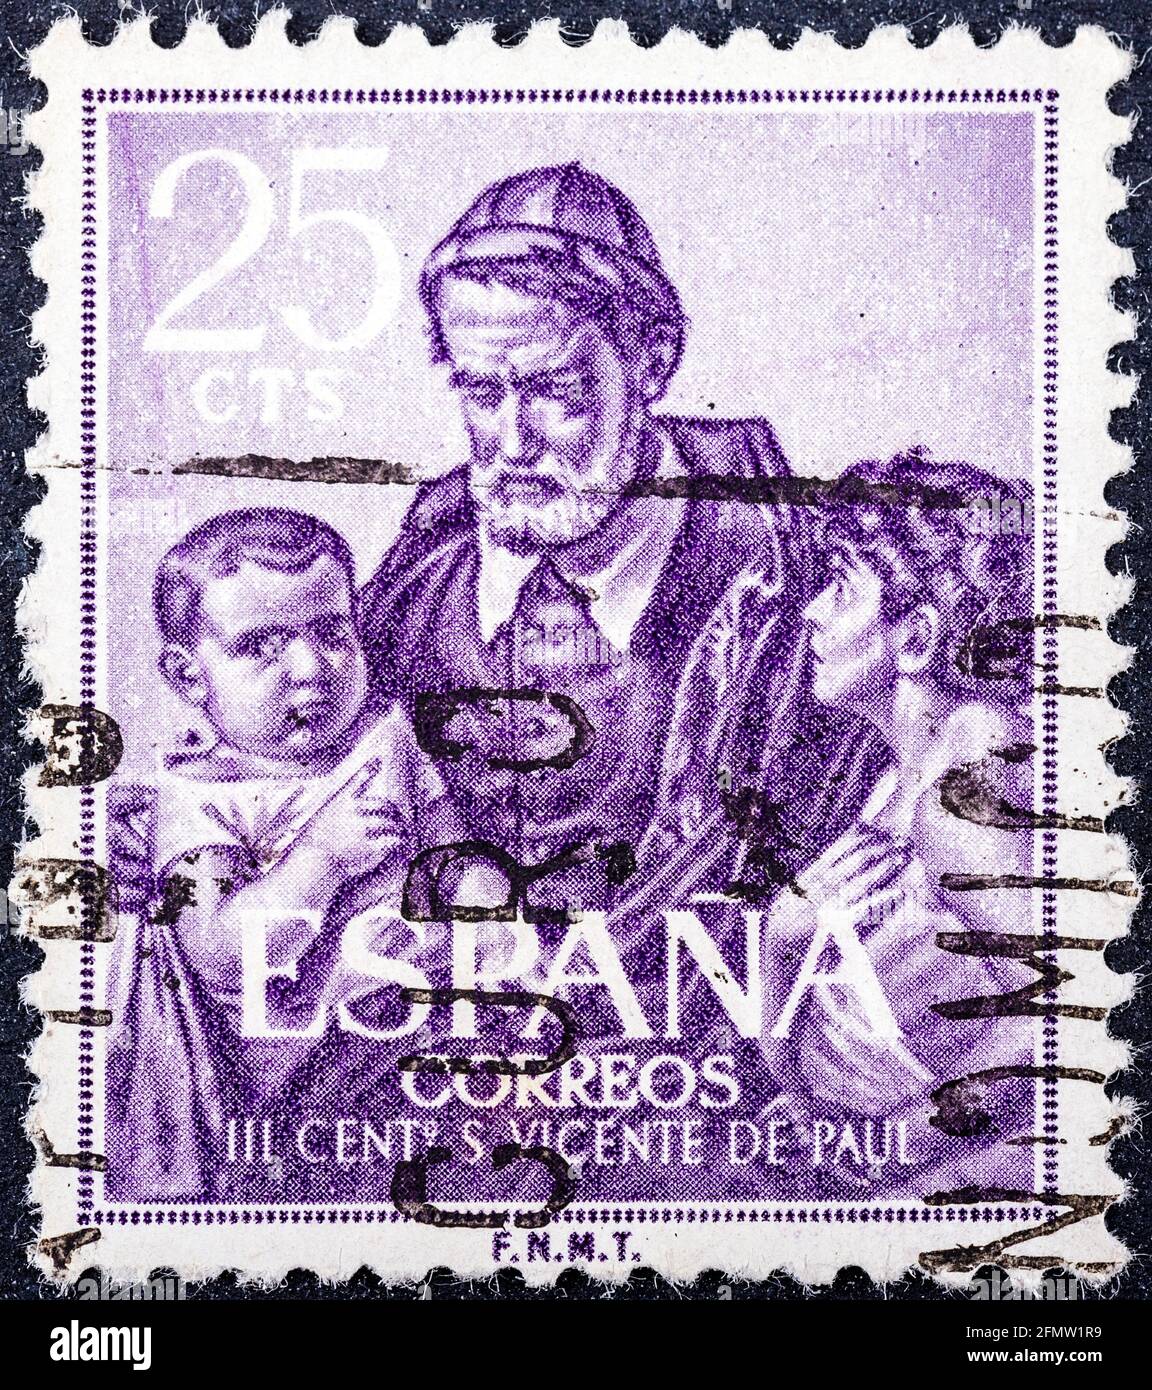 ESPAGNE - VERS 1960: Un timbre imprimé en Espagne montre Saint Vincent de Paul, prêtre de l'Église catholique qui s'est consacré à servir les pauvres, c Banque D'Images